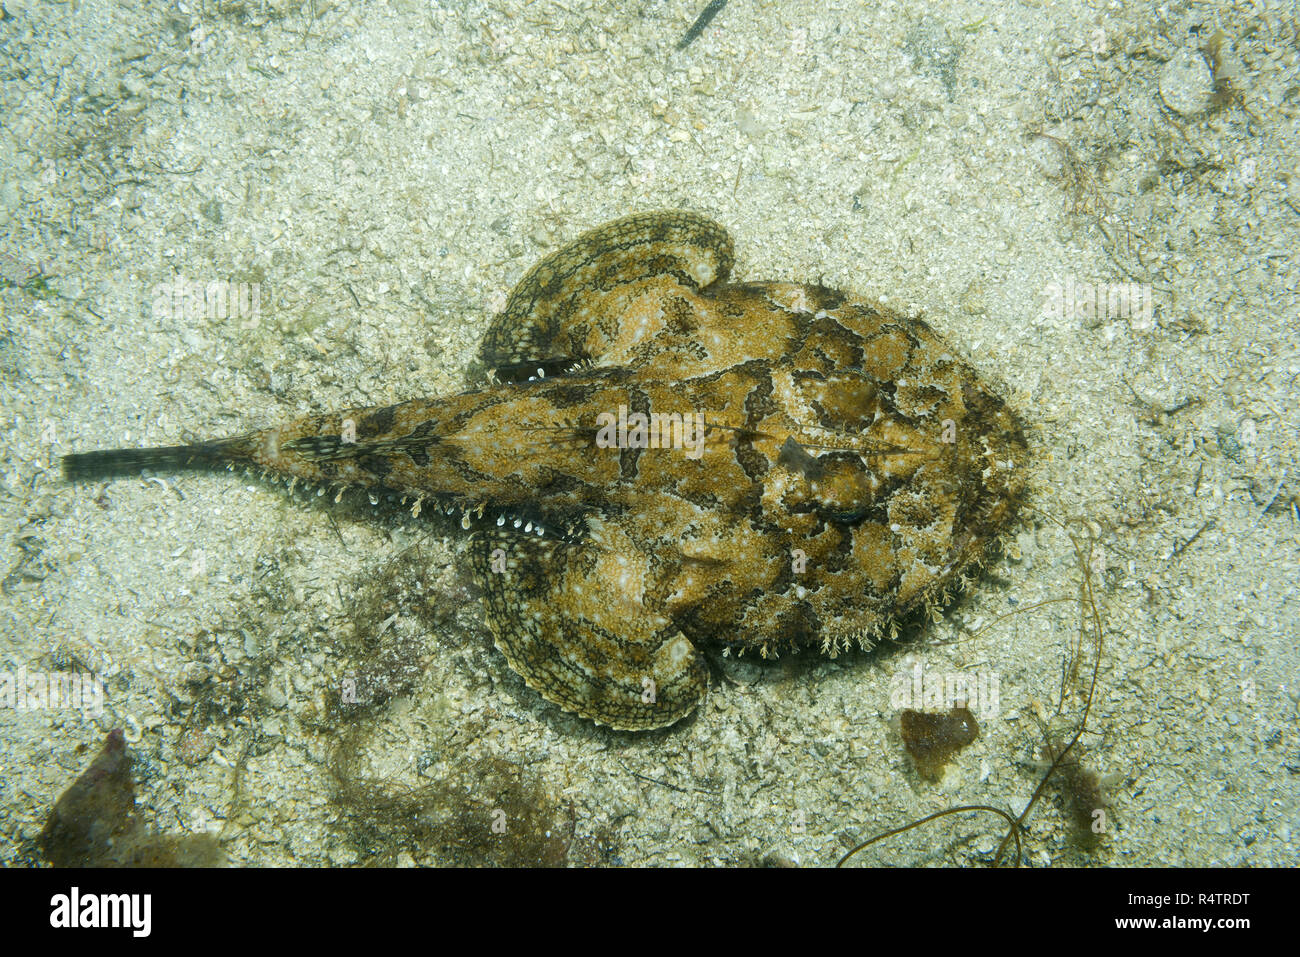 (Lophius piscatorius baudroie) se trouve sur le sable, Mer de Norvège, dans le Nord de l'Atlantique, Norvège Banque D'Images